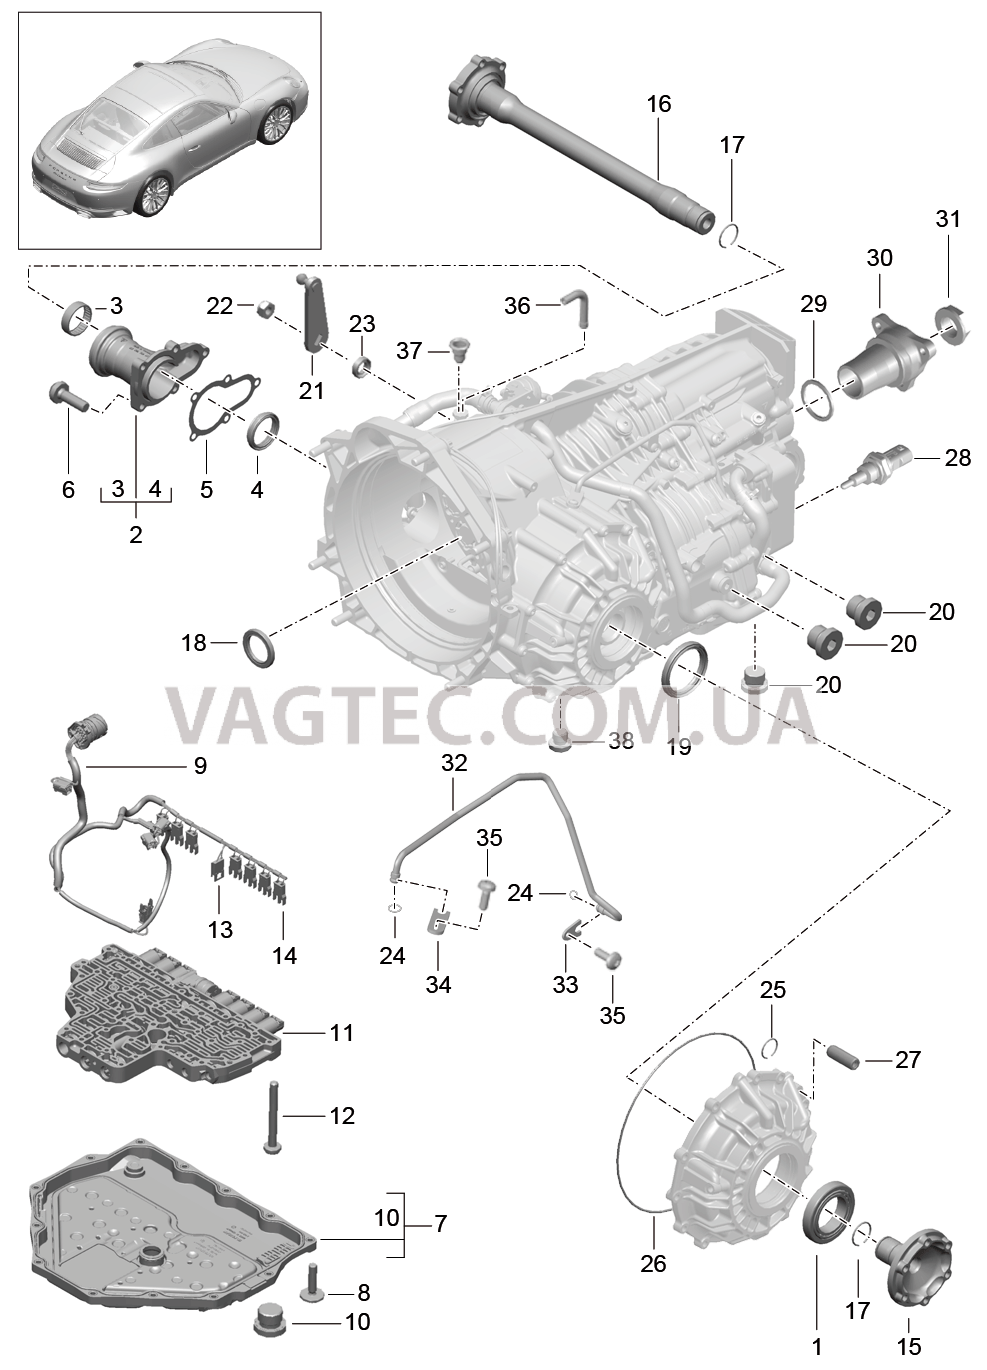 320-005 - PDK -, Коробка переключения передач, Отдельные детали
						
						CG1.10, CG1.15, CG1.40 для PORSCHE 911.Carrera 2017-2018